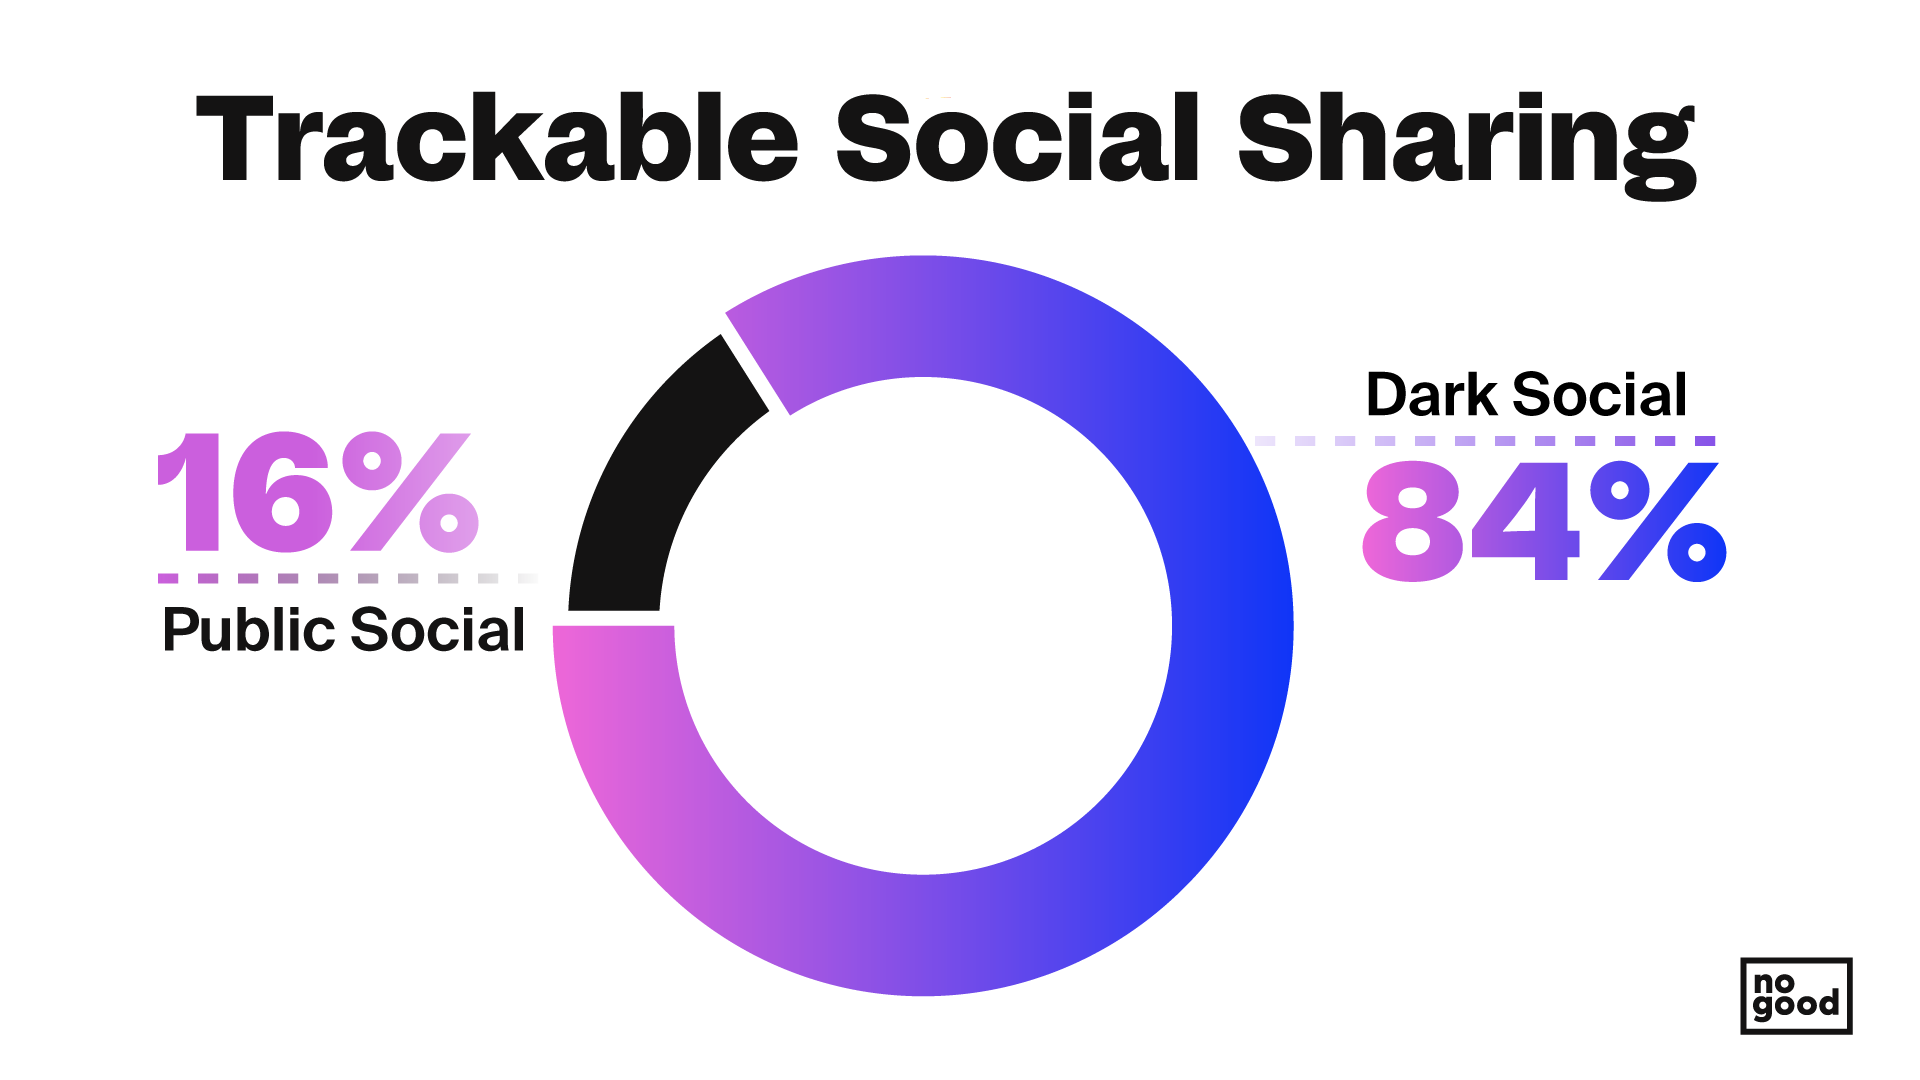 84% of social sharing is Dark Social